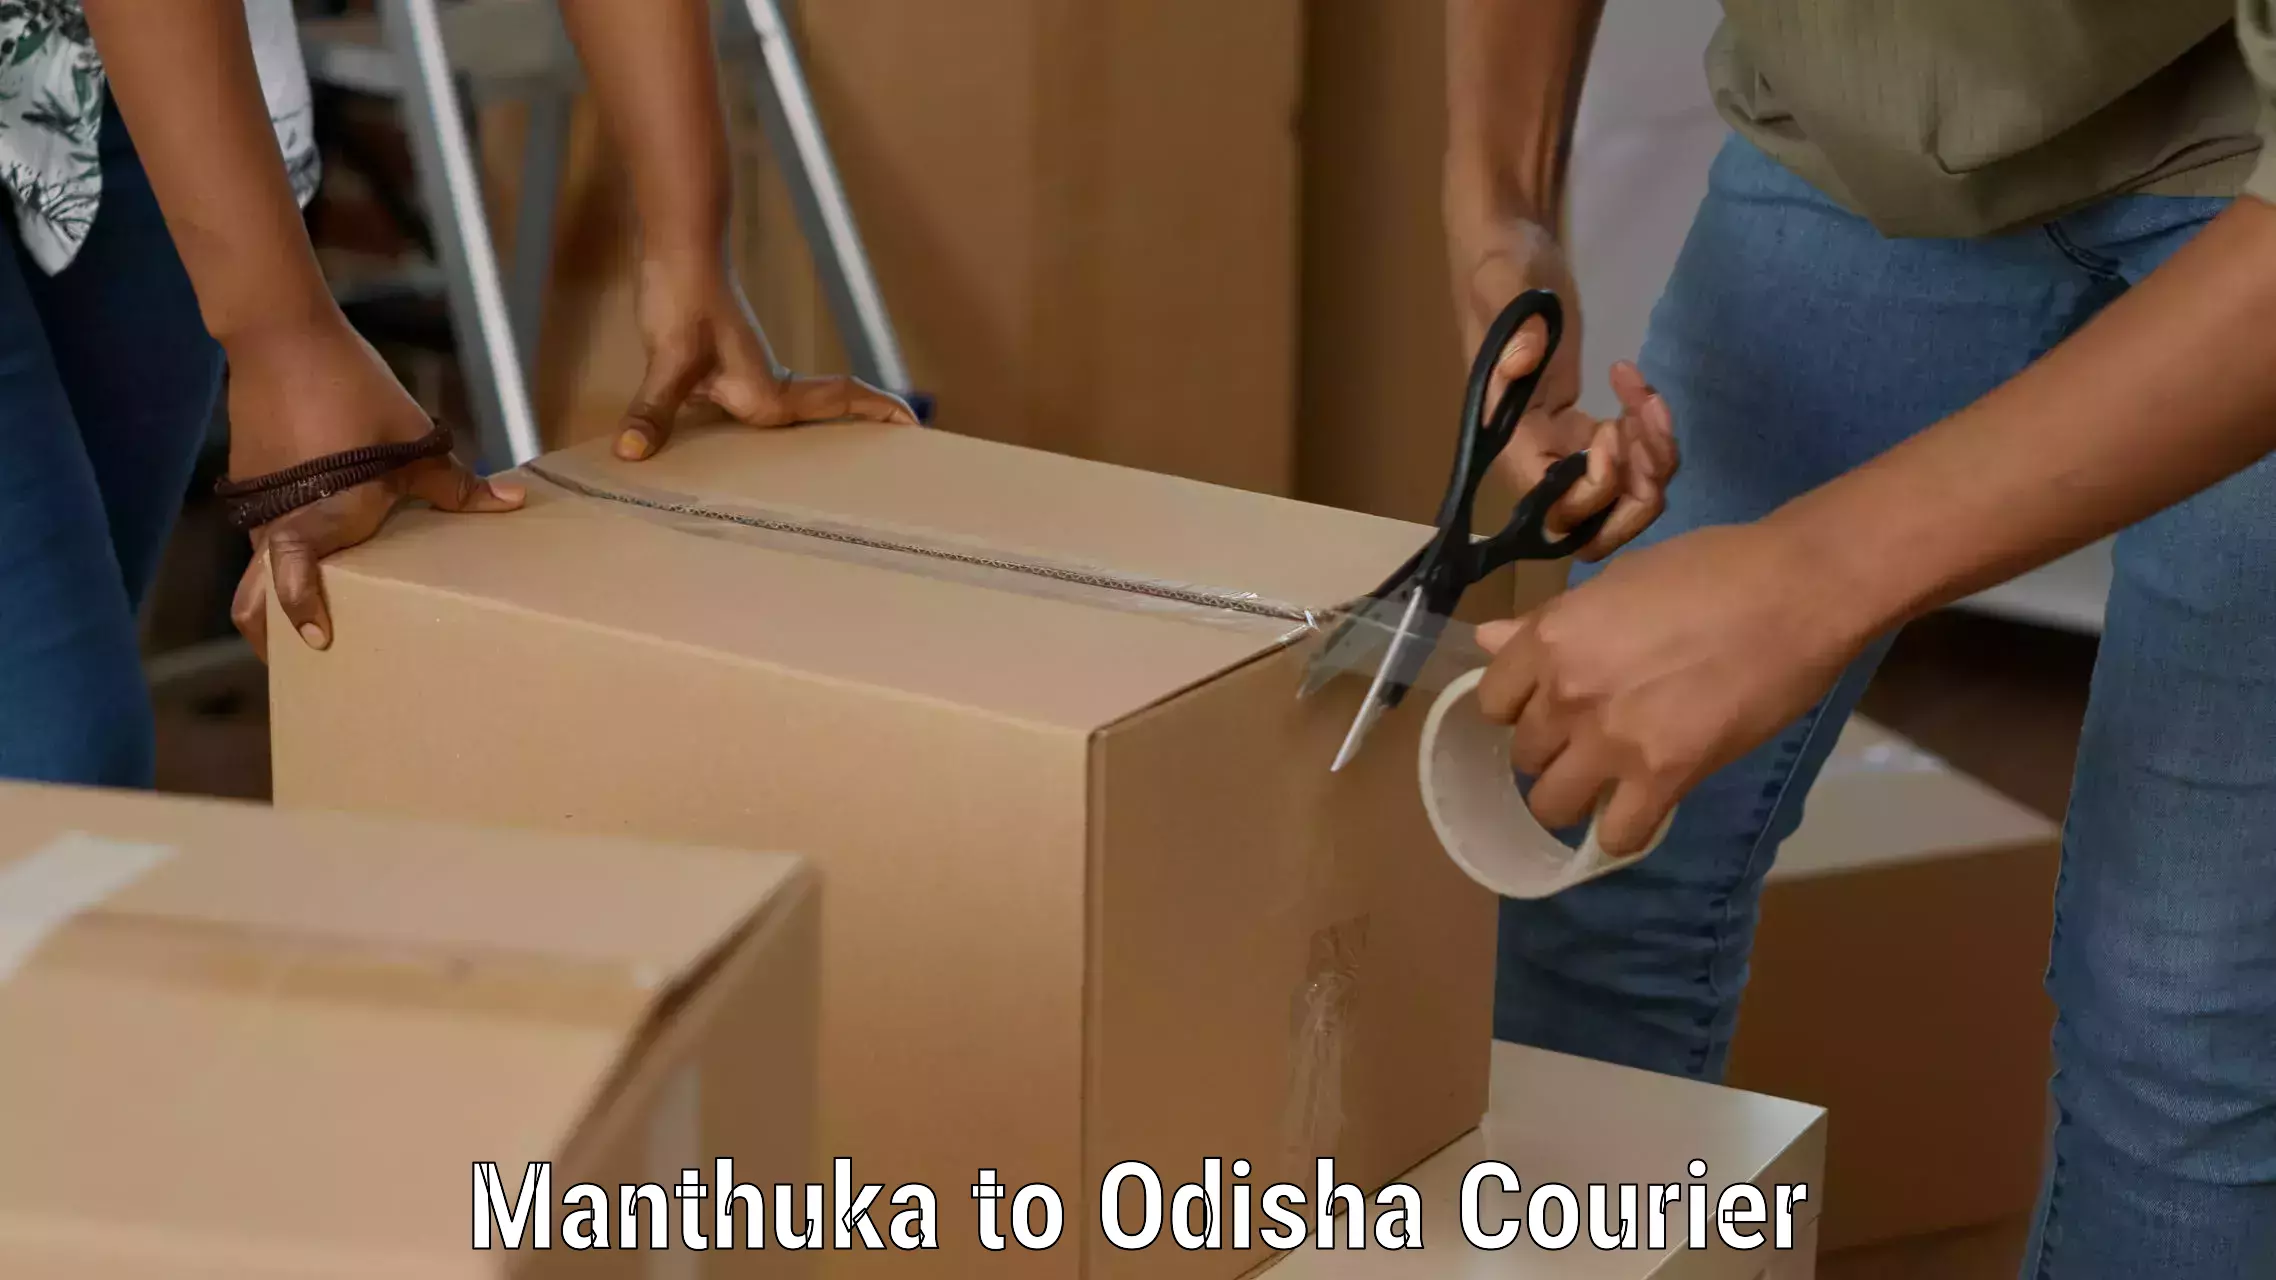 Easy return solutions Manthuka to Melchhamunda